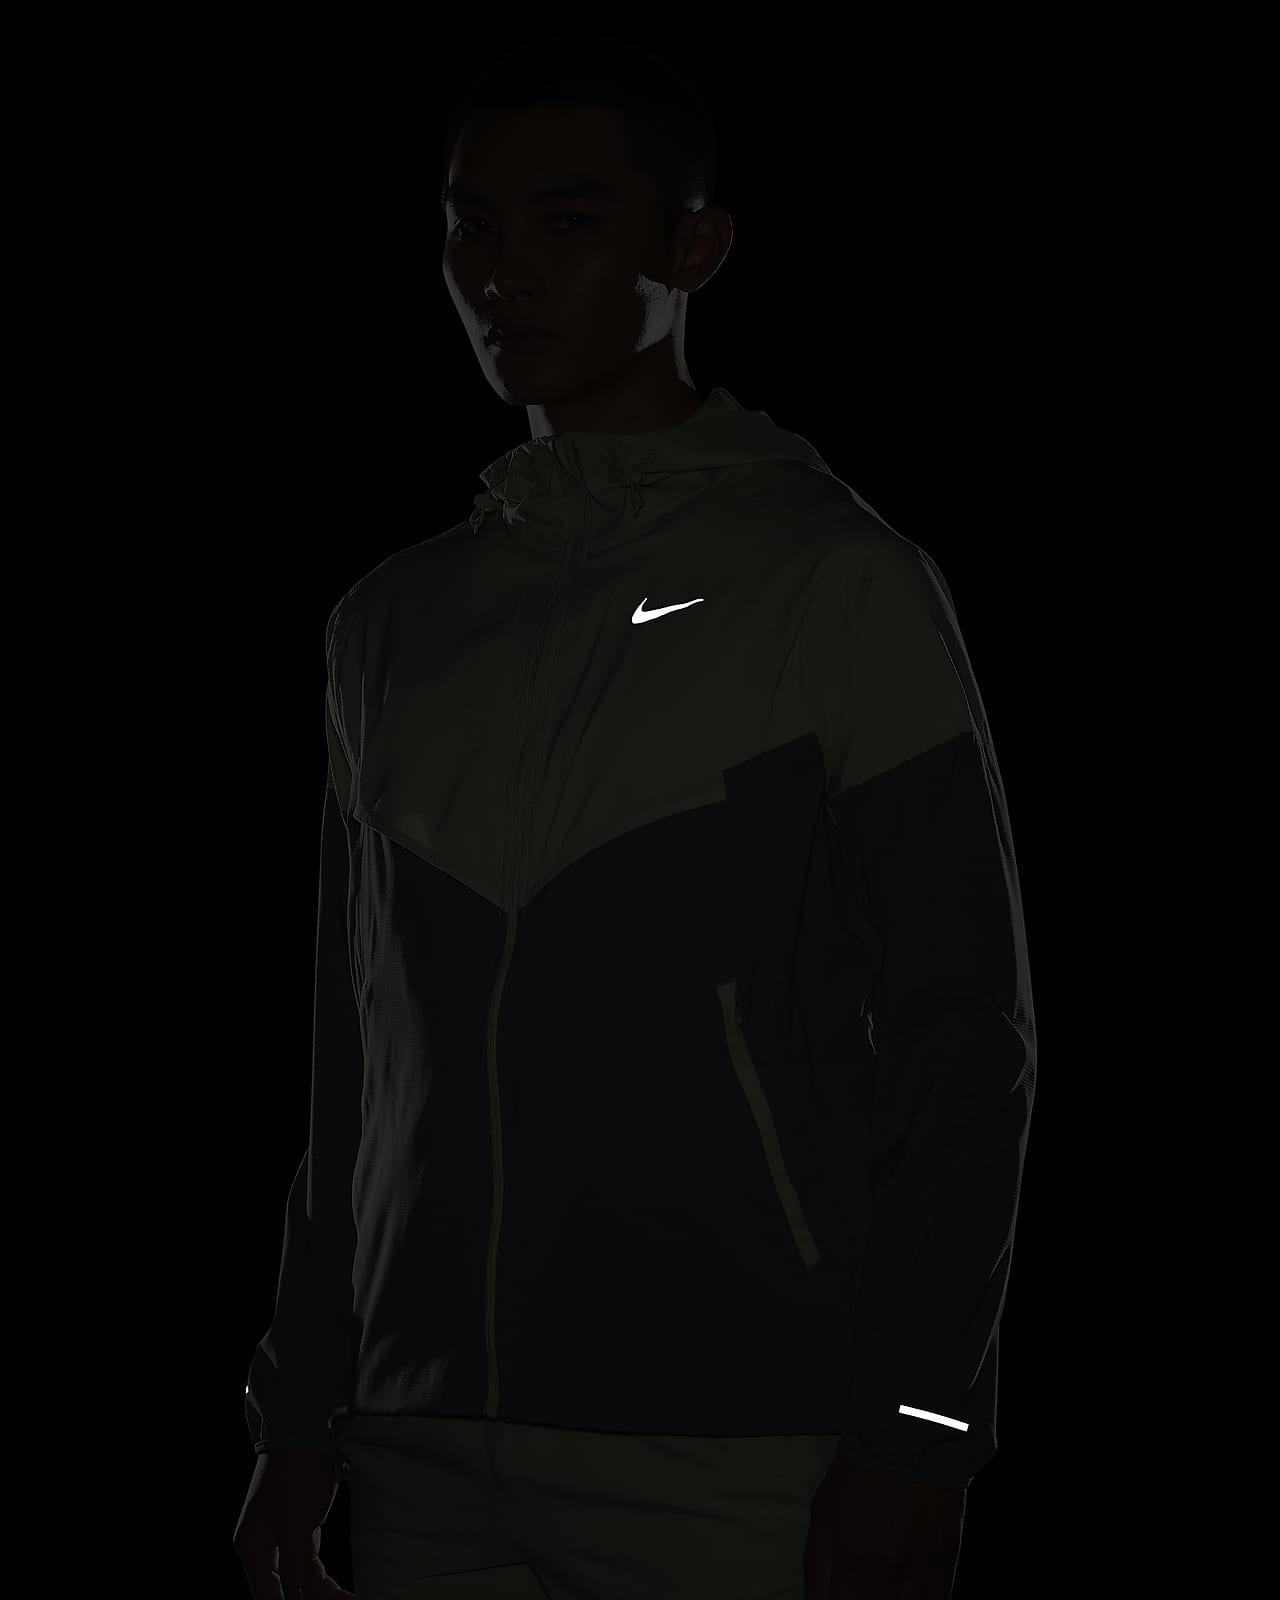  Nike Windrunner Packable Men's Running Jacket (US